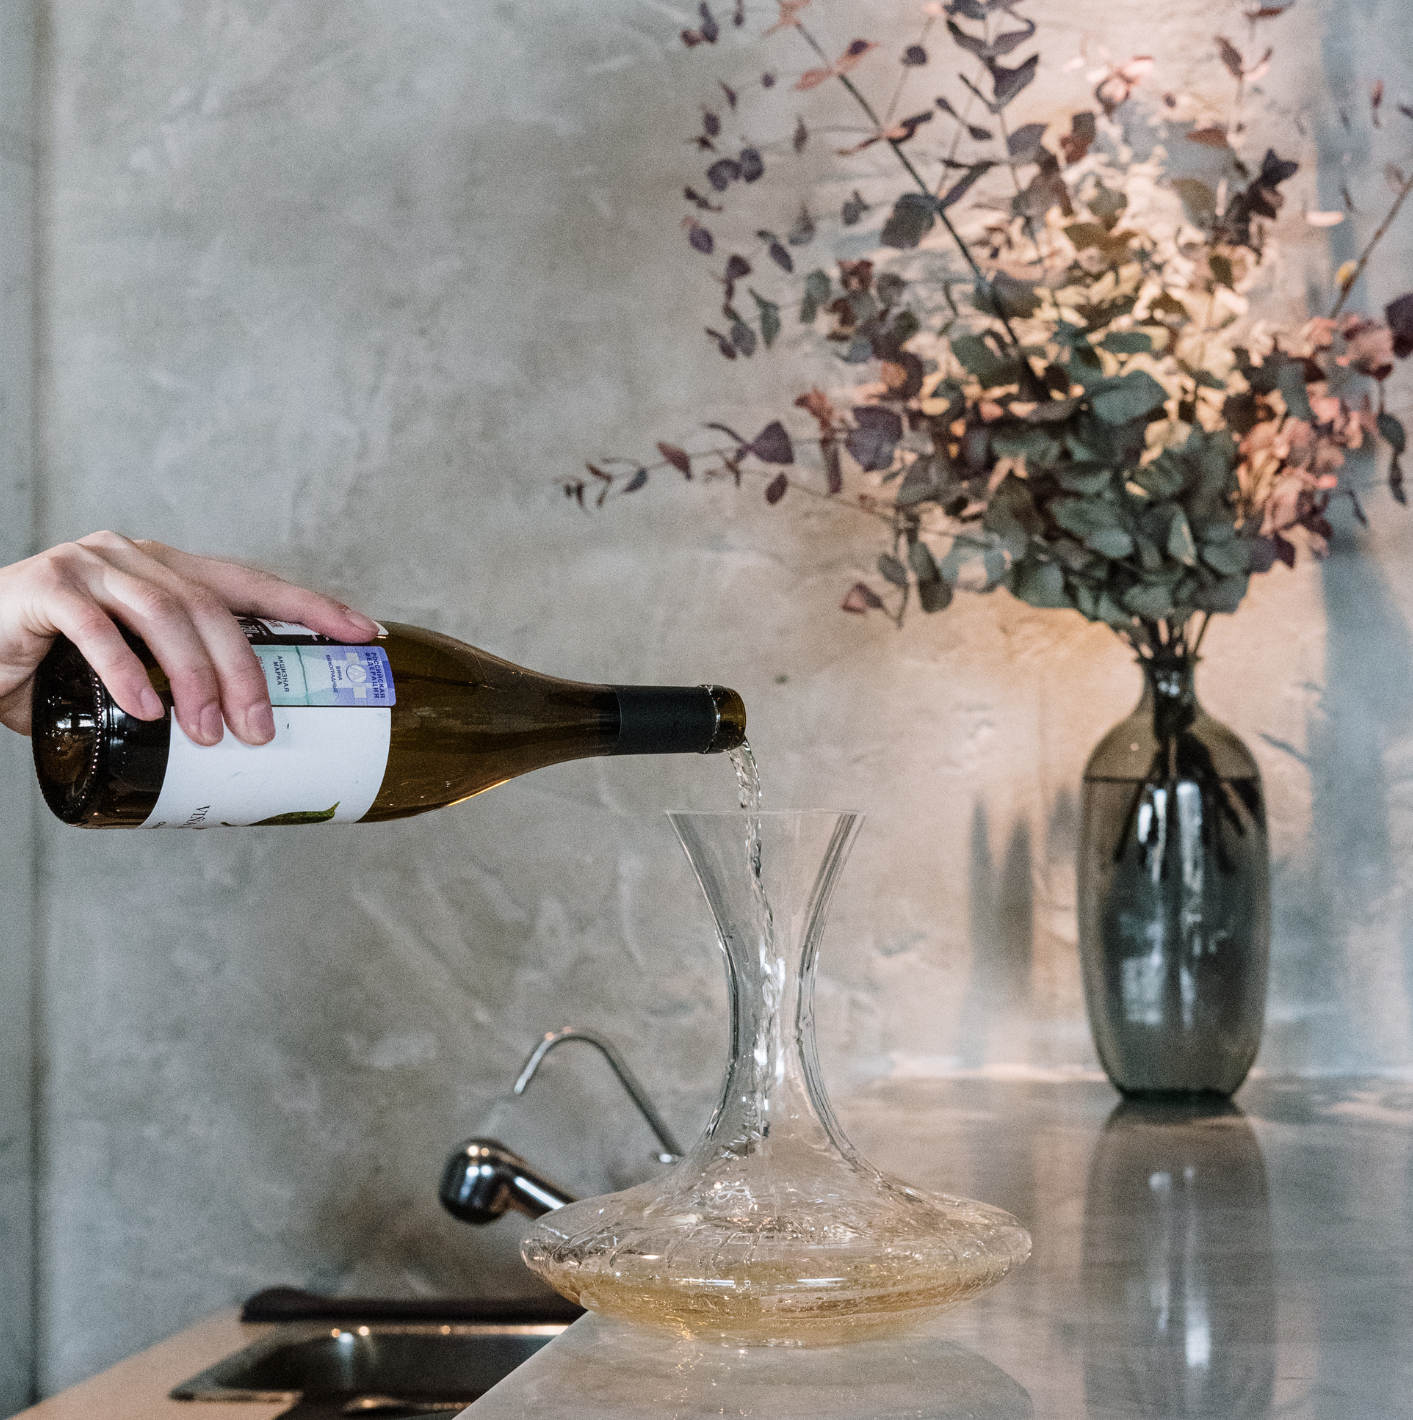 Décanter son vin : verser votre vin dans une carage à décanter - Vins & Cadeaux